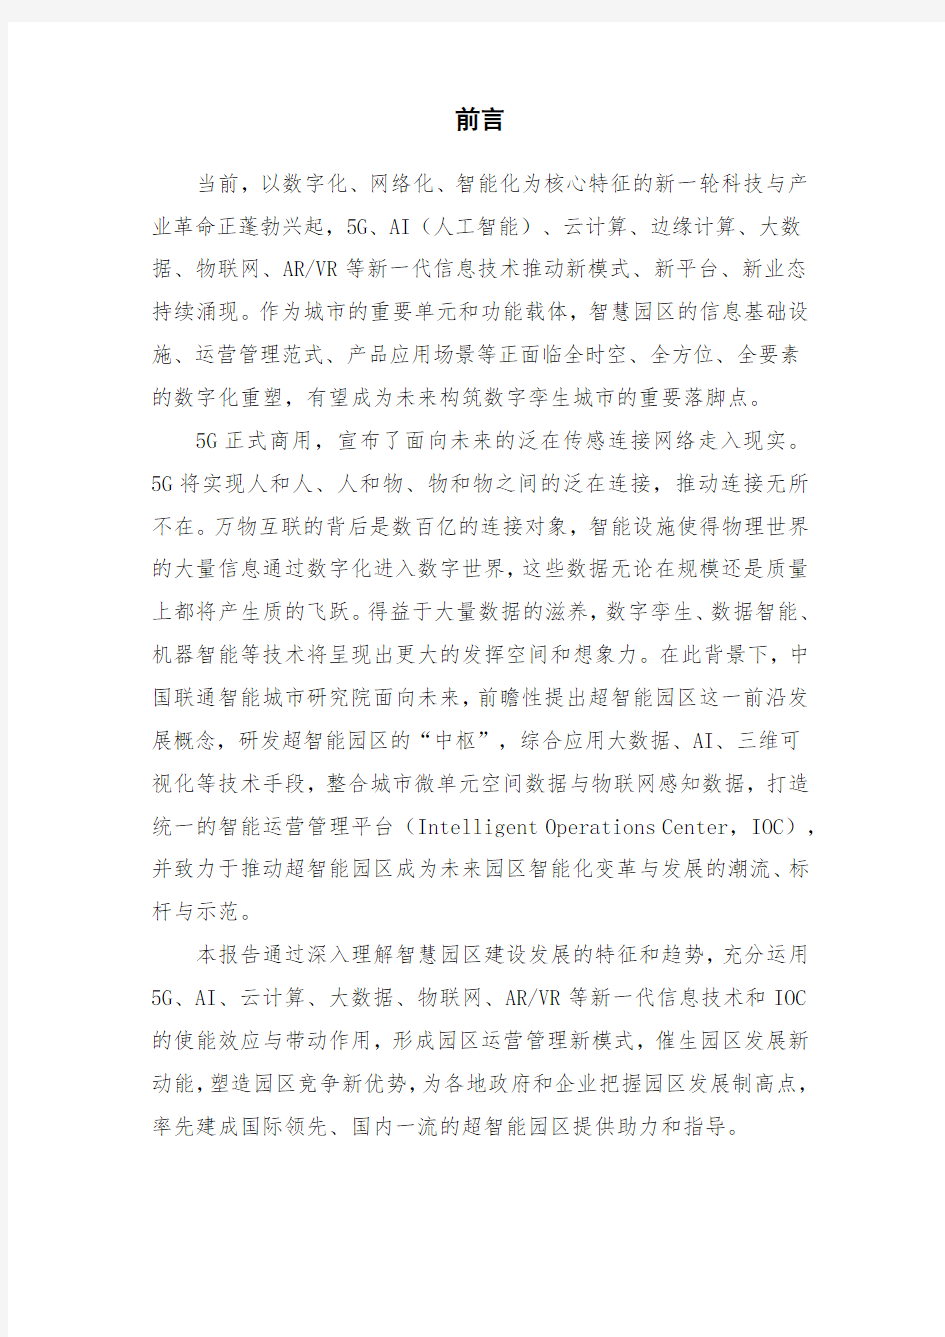 中国联通-5G超智能园区白皮书(2019)